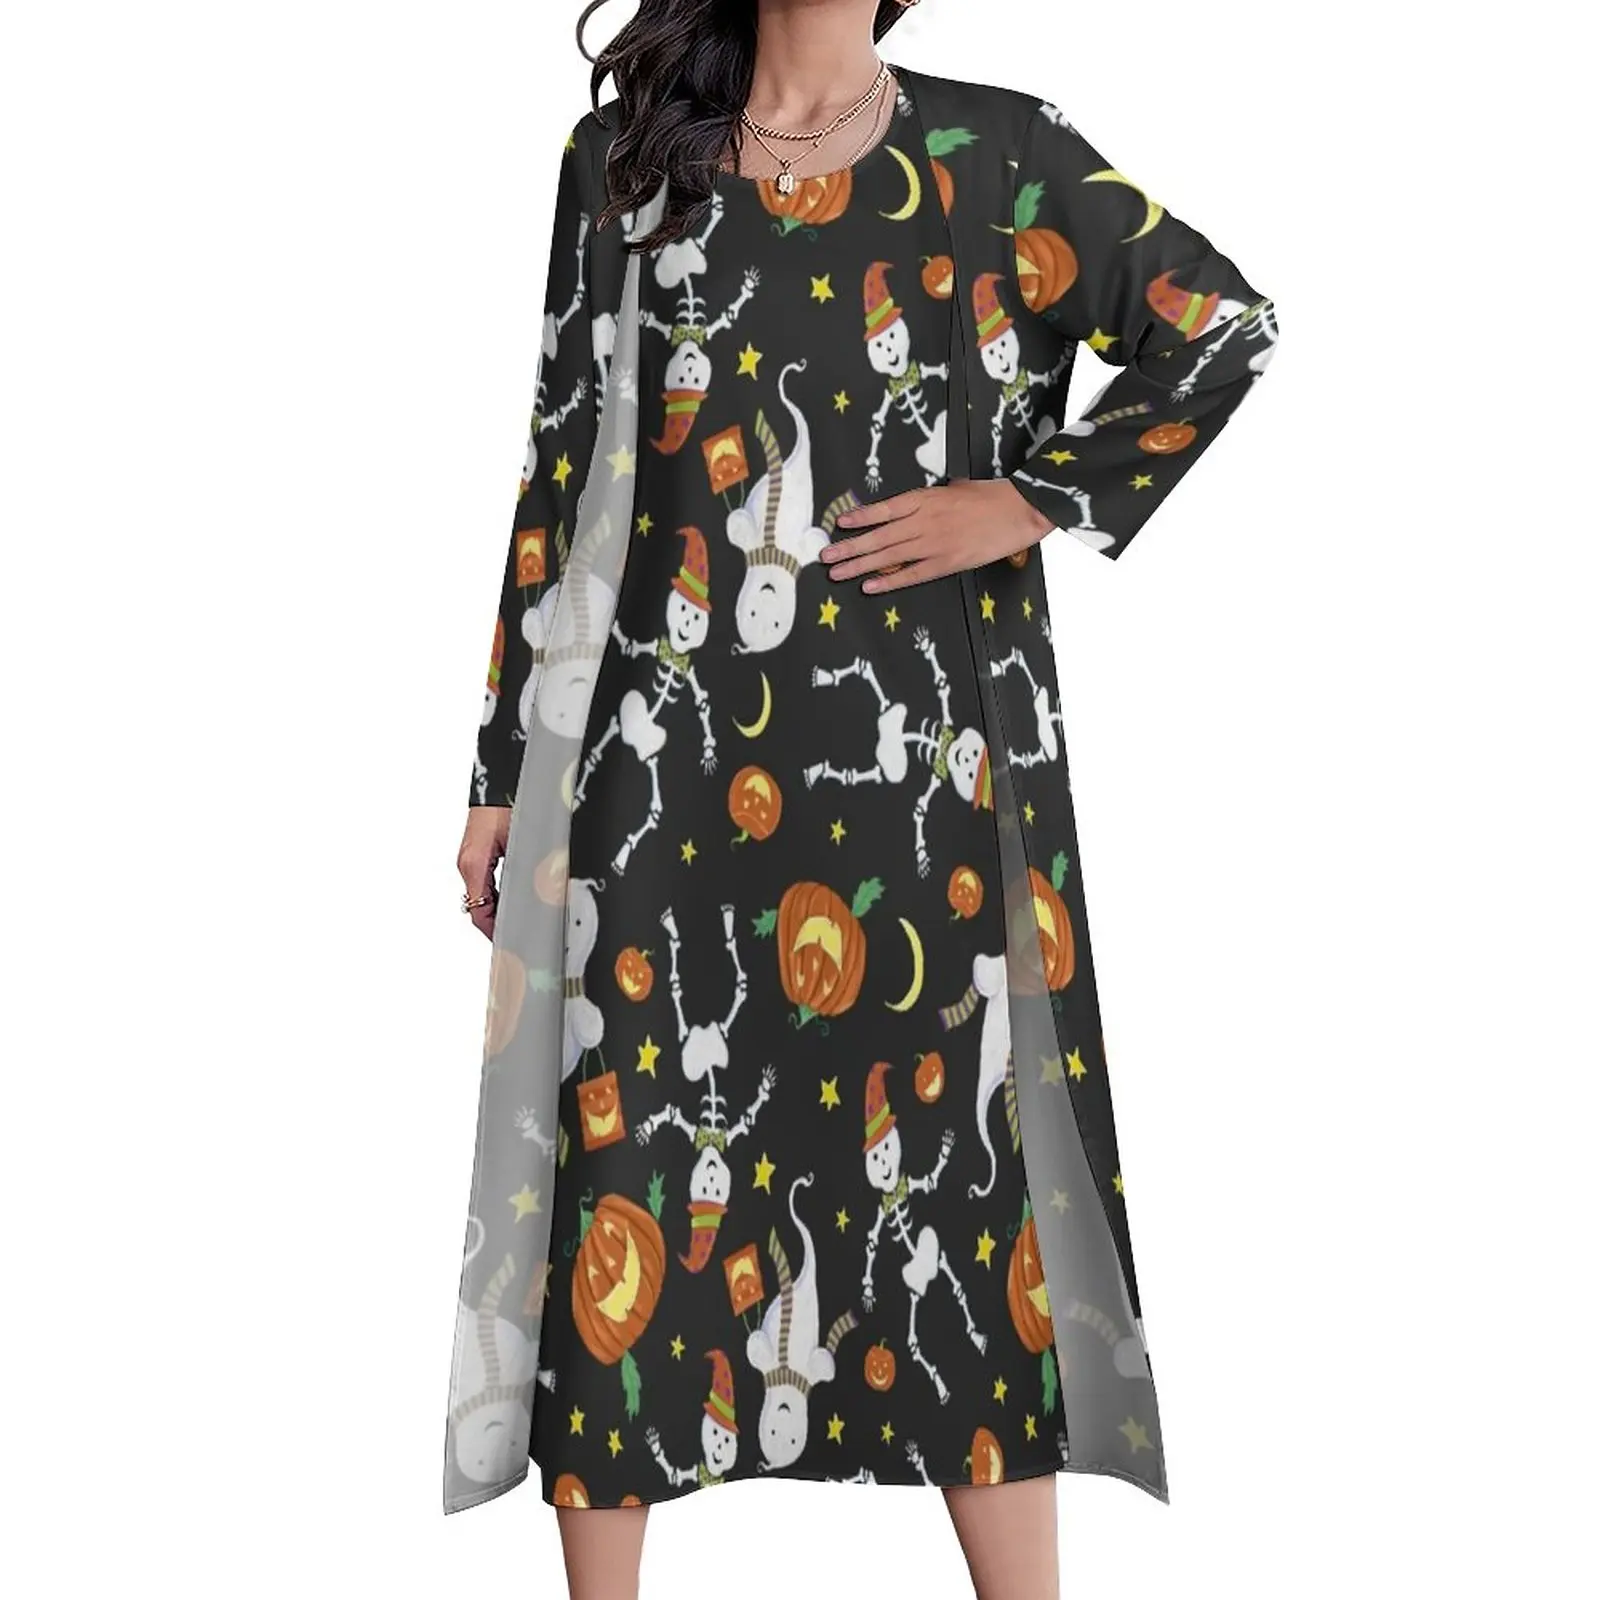 

Женское платье макси в богемном стиле, длинное платье с забавным принтом призраков, с графическим принтом и скелетом, уличная одежда для Хэллоуина, большие размеры 4XL 5XL, на лето